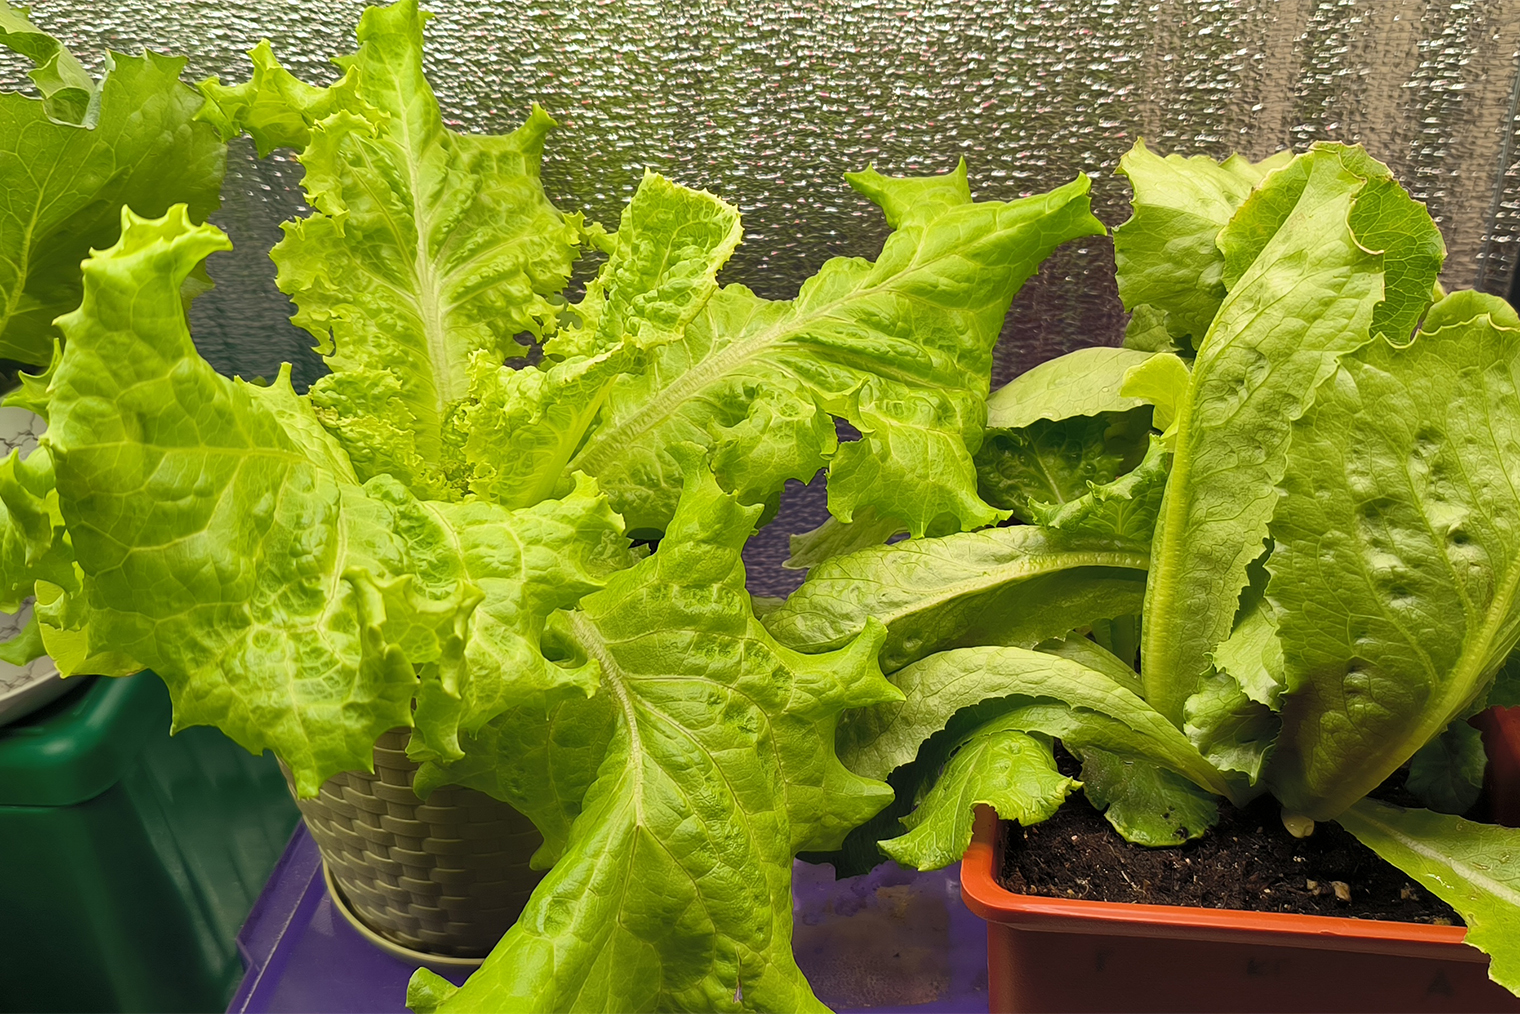 Новое поколение салатов в стеллаже тоже чувствует себя прекрасно, некоторые даже завязывают маленькие кочаны